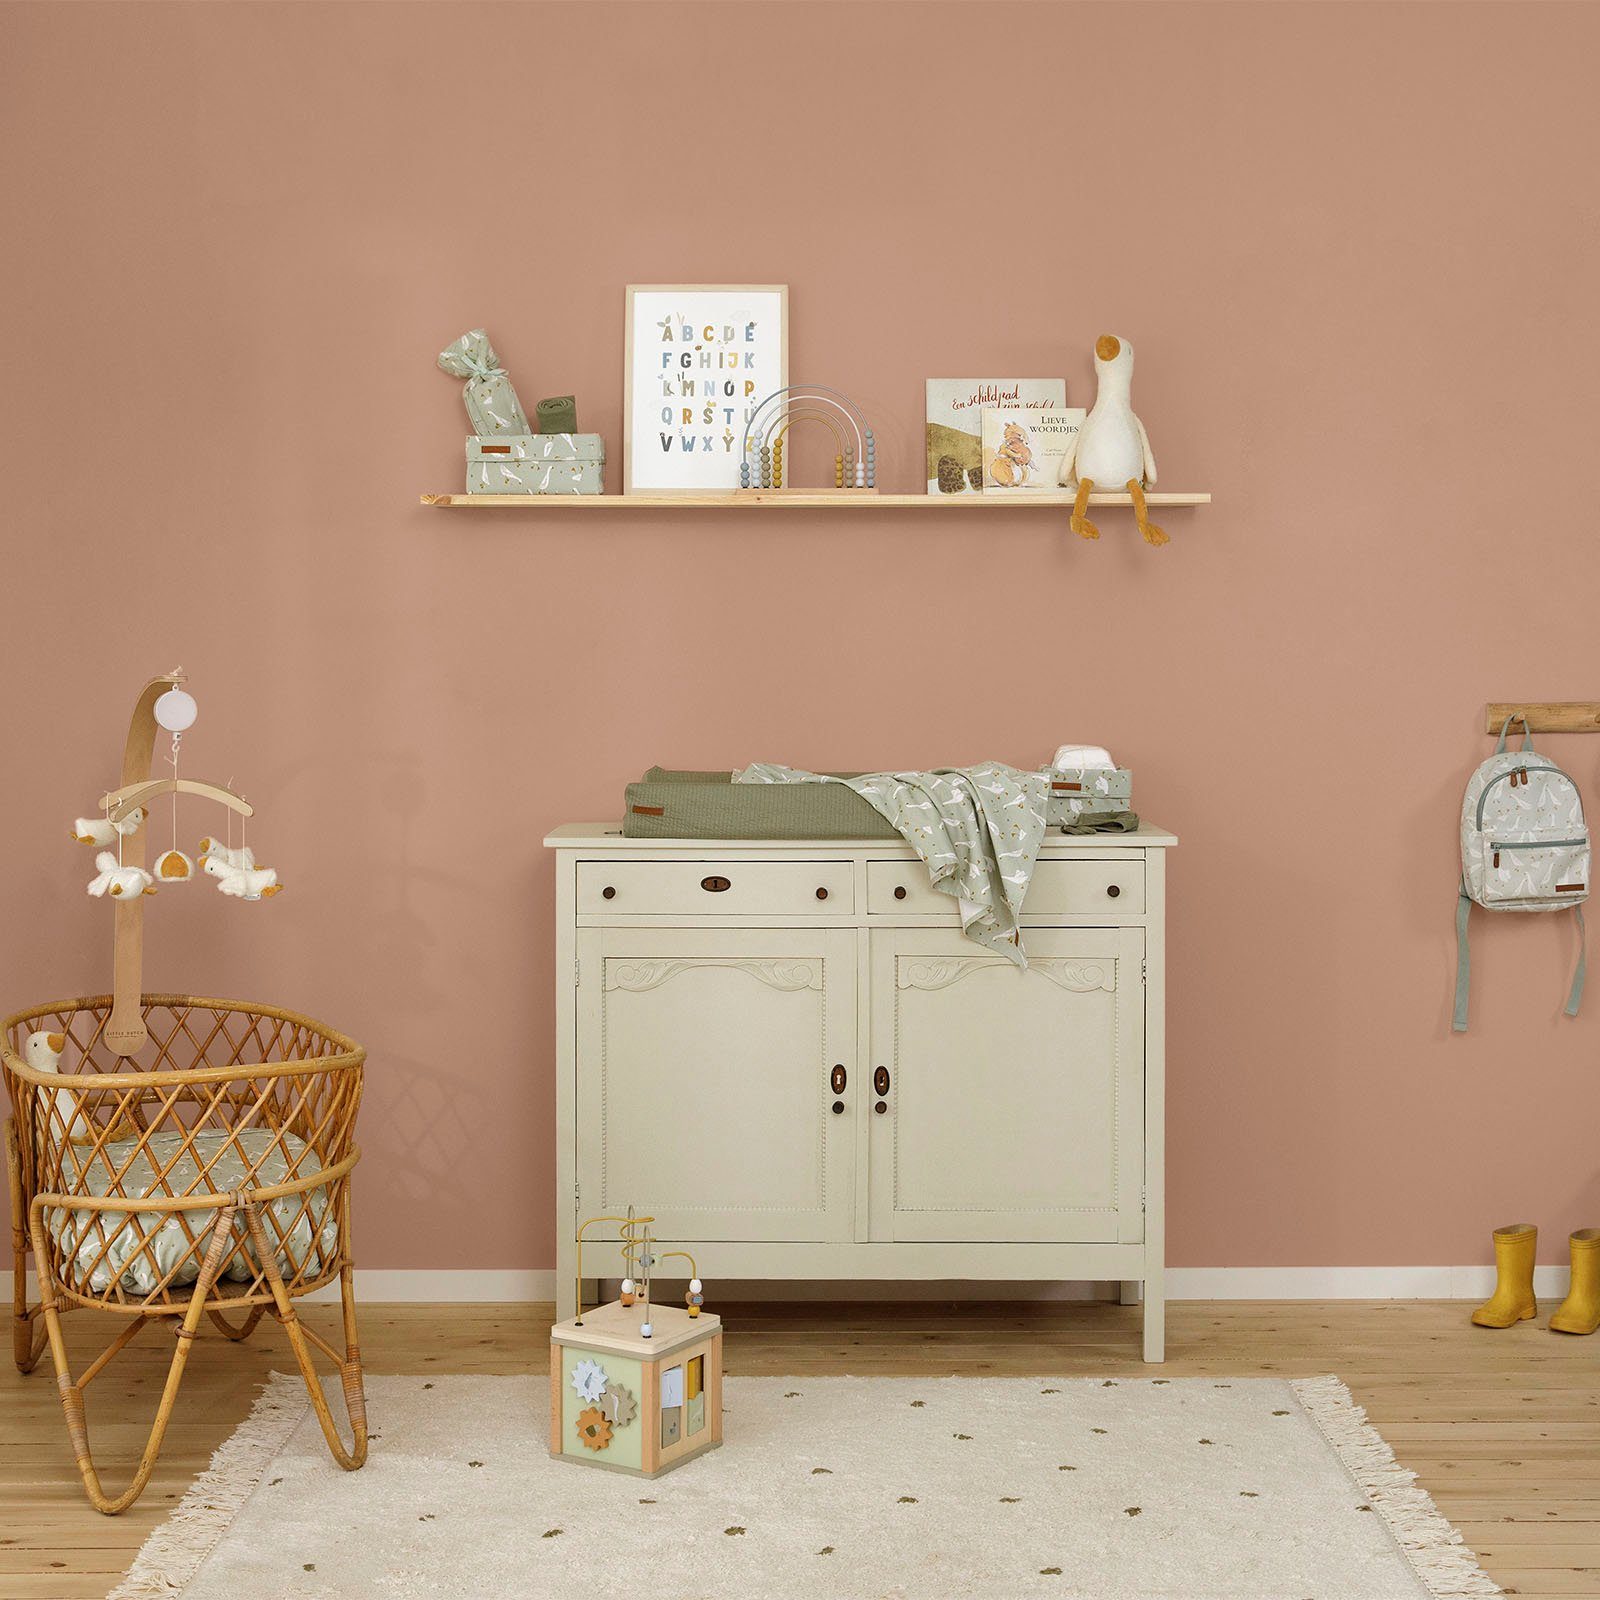 LITTLE DUTCH Wandfarbe Wallpaint, Rust waschbeständig, und hochdeckend geeignet Kinderzimmer für Faded extra matt, Orange